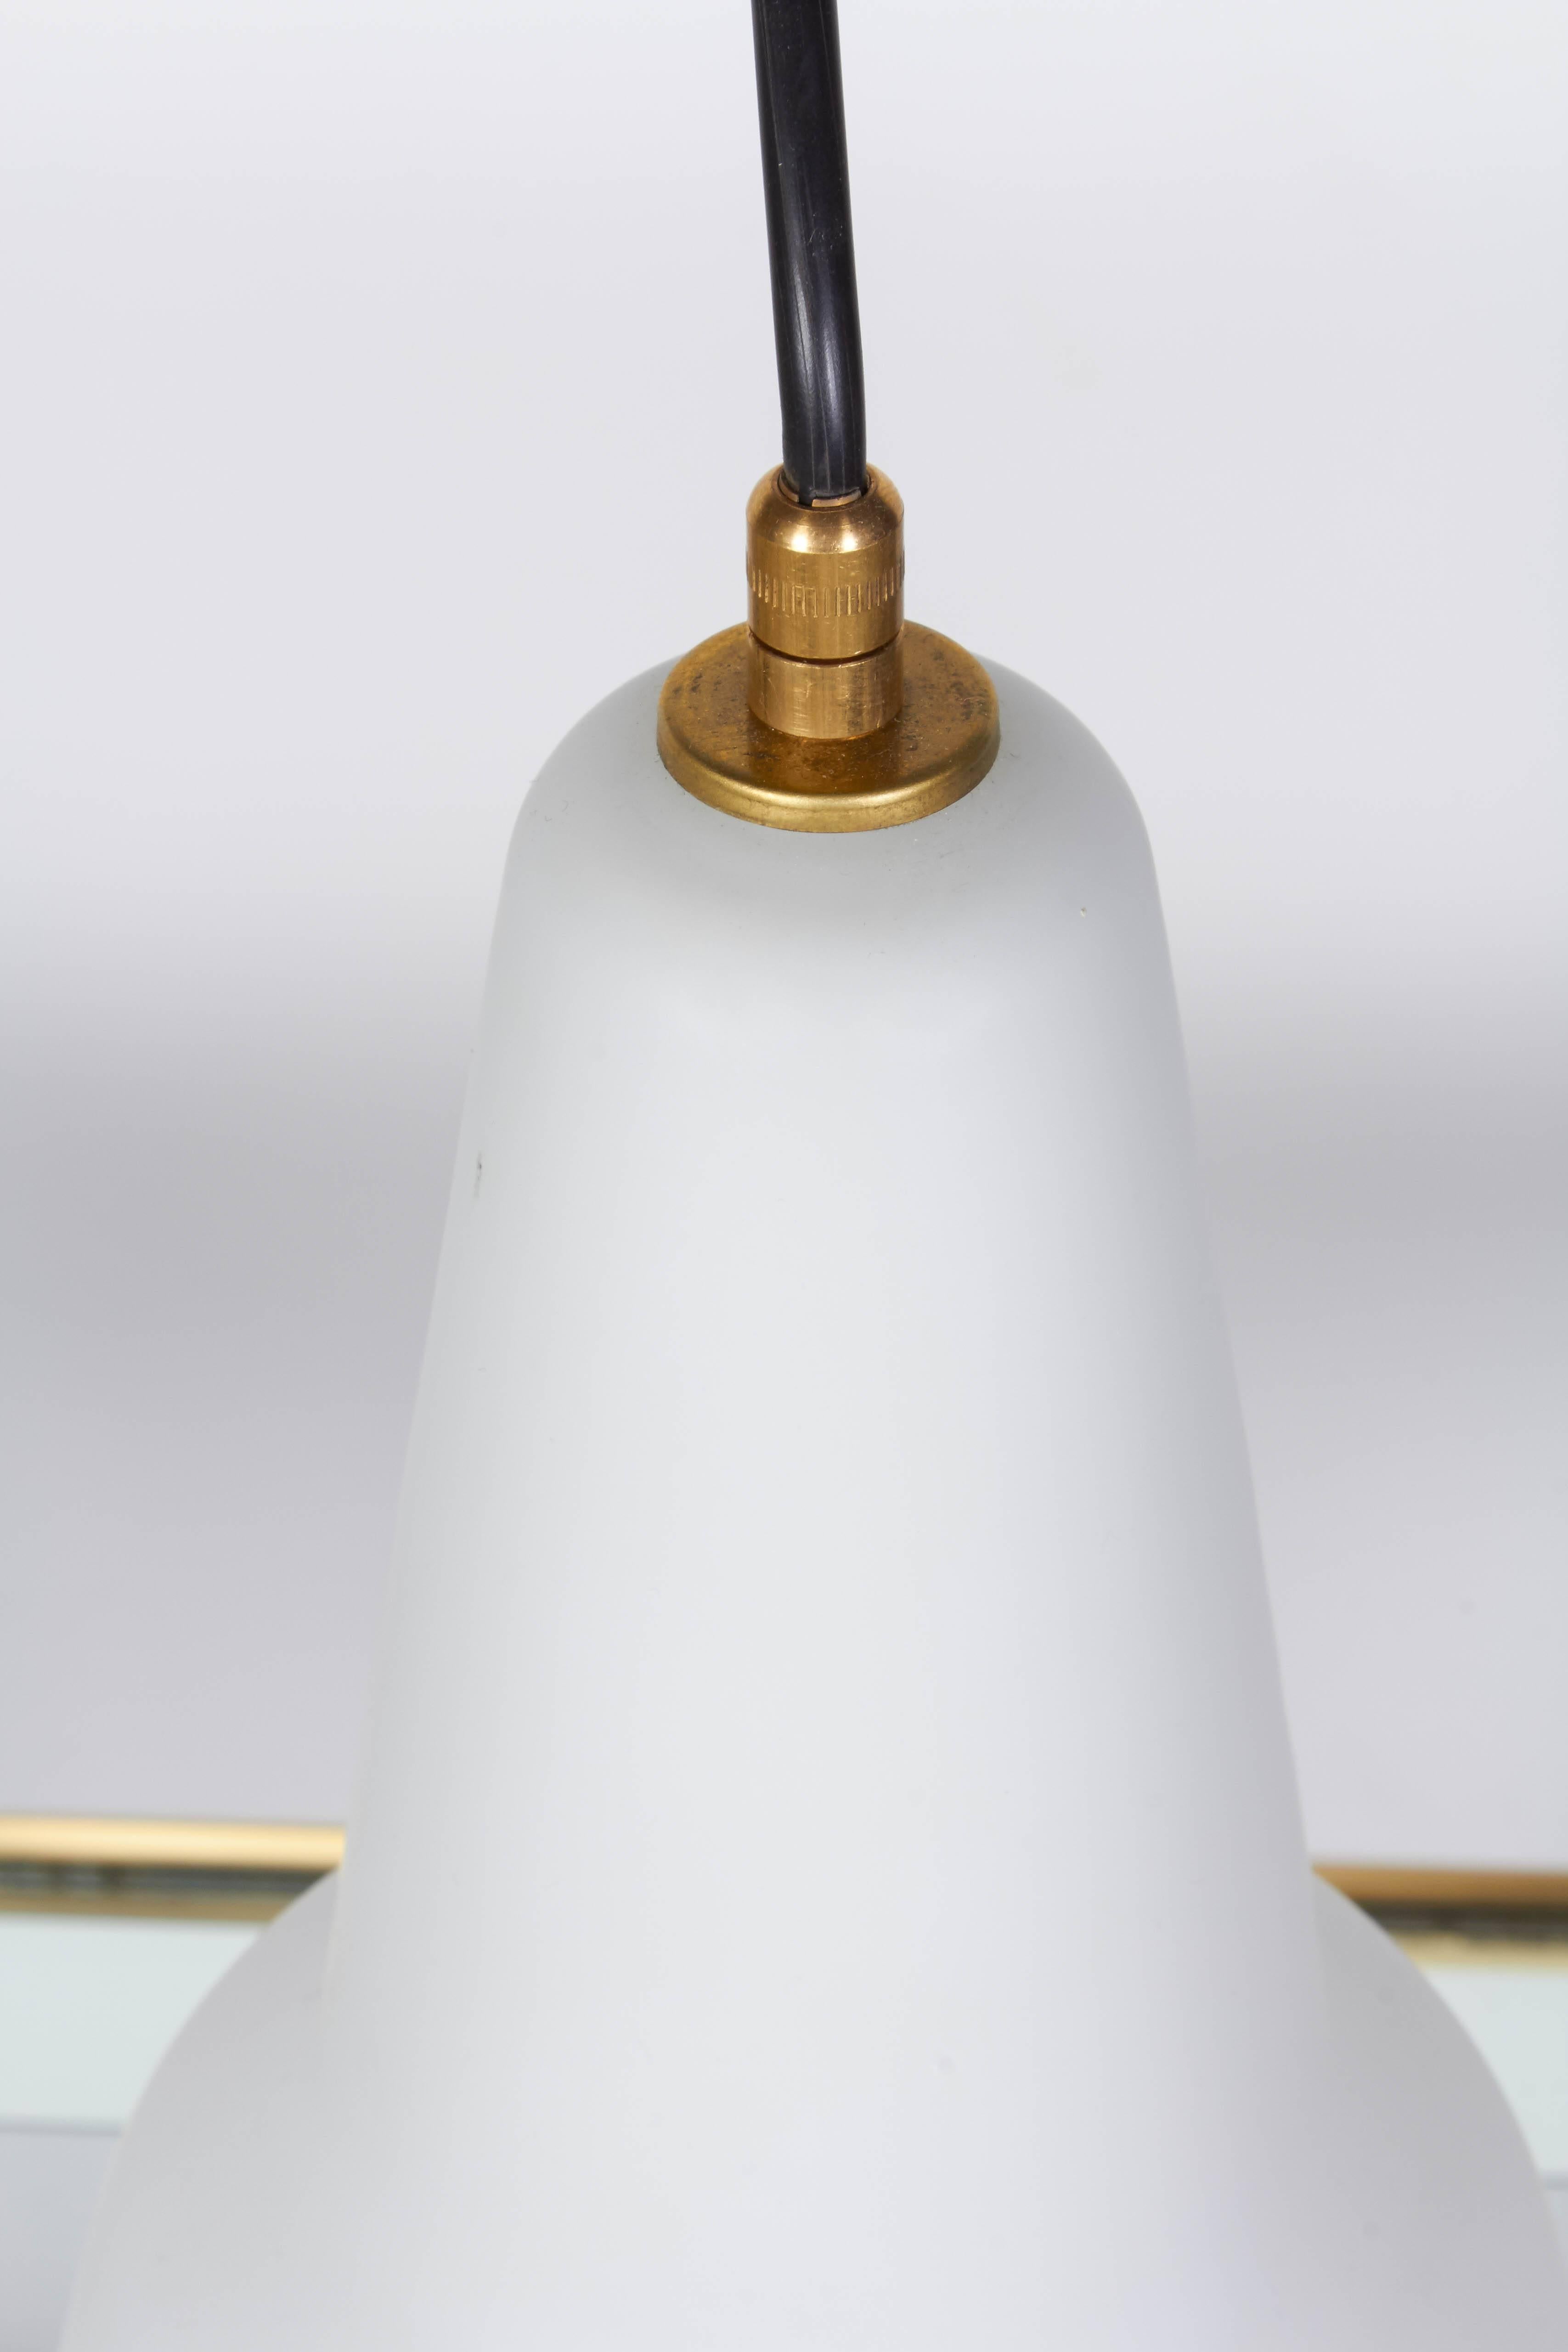 Eines aus einer Gruppe italienischer mundgeblasener Pendelleuchten, um 1950. Der Glasschirm ist mit einer klaren, satinierten Schicht über weißem Glas überzogen und hat die Form eines Tropfens. Hält eine Standard-Glühbirne. Maße: Der Schirm hat